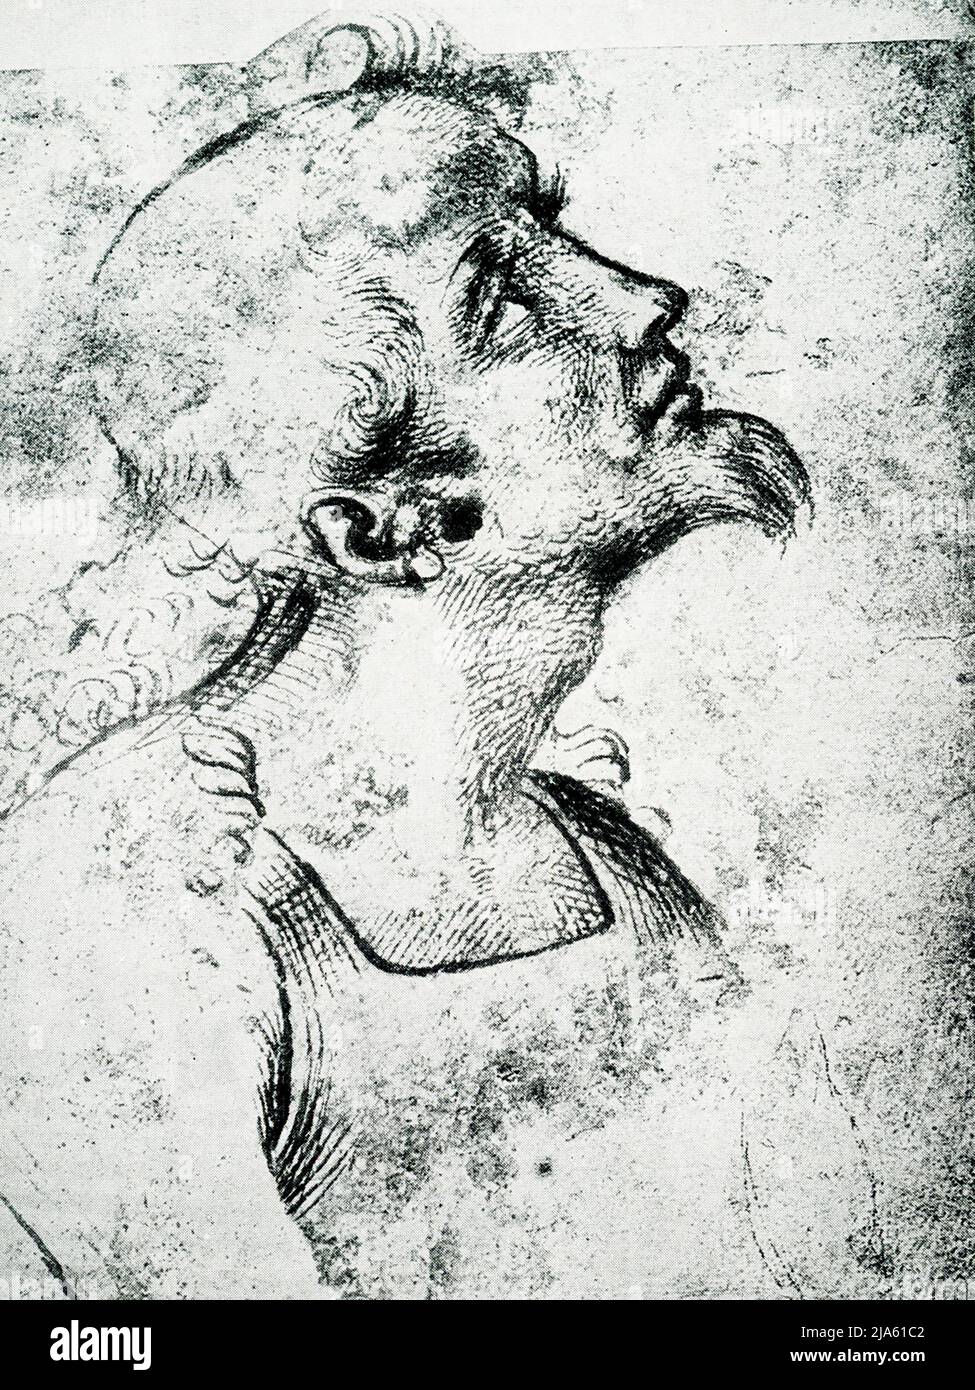 Diese Zeichnung, Head in Profile, von Raphael (1483-1520) ist an der Akademie der bildenden Künste in Venedig. Das umgedrehte Gesicht könnte das Haupt eines heiligen sein. Der italienische Maler und Architekt der Hochrenaissance war der italienische Sanzio da Urbino. Sein Werk wird für seine Klarheit der Form, die Leichtigkeit der Komposition und die visuelle Verwirklichung des neoplatonischen Ideals menschlicher Größe bewundert. Stockfoto